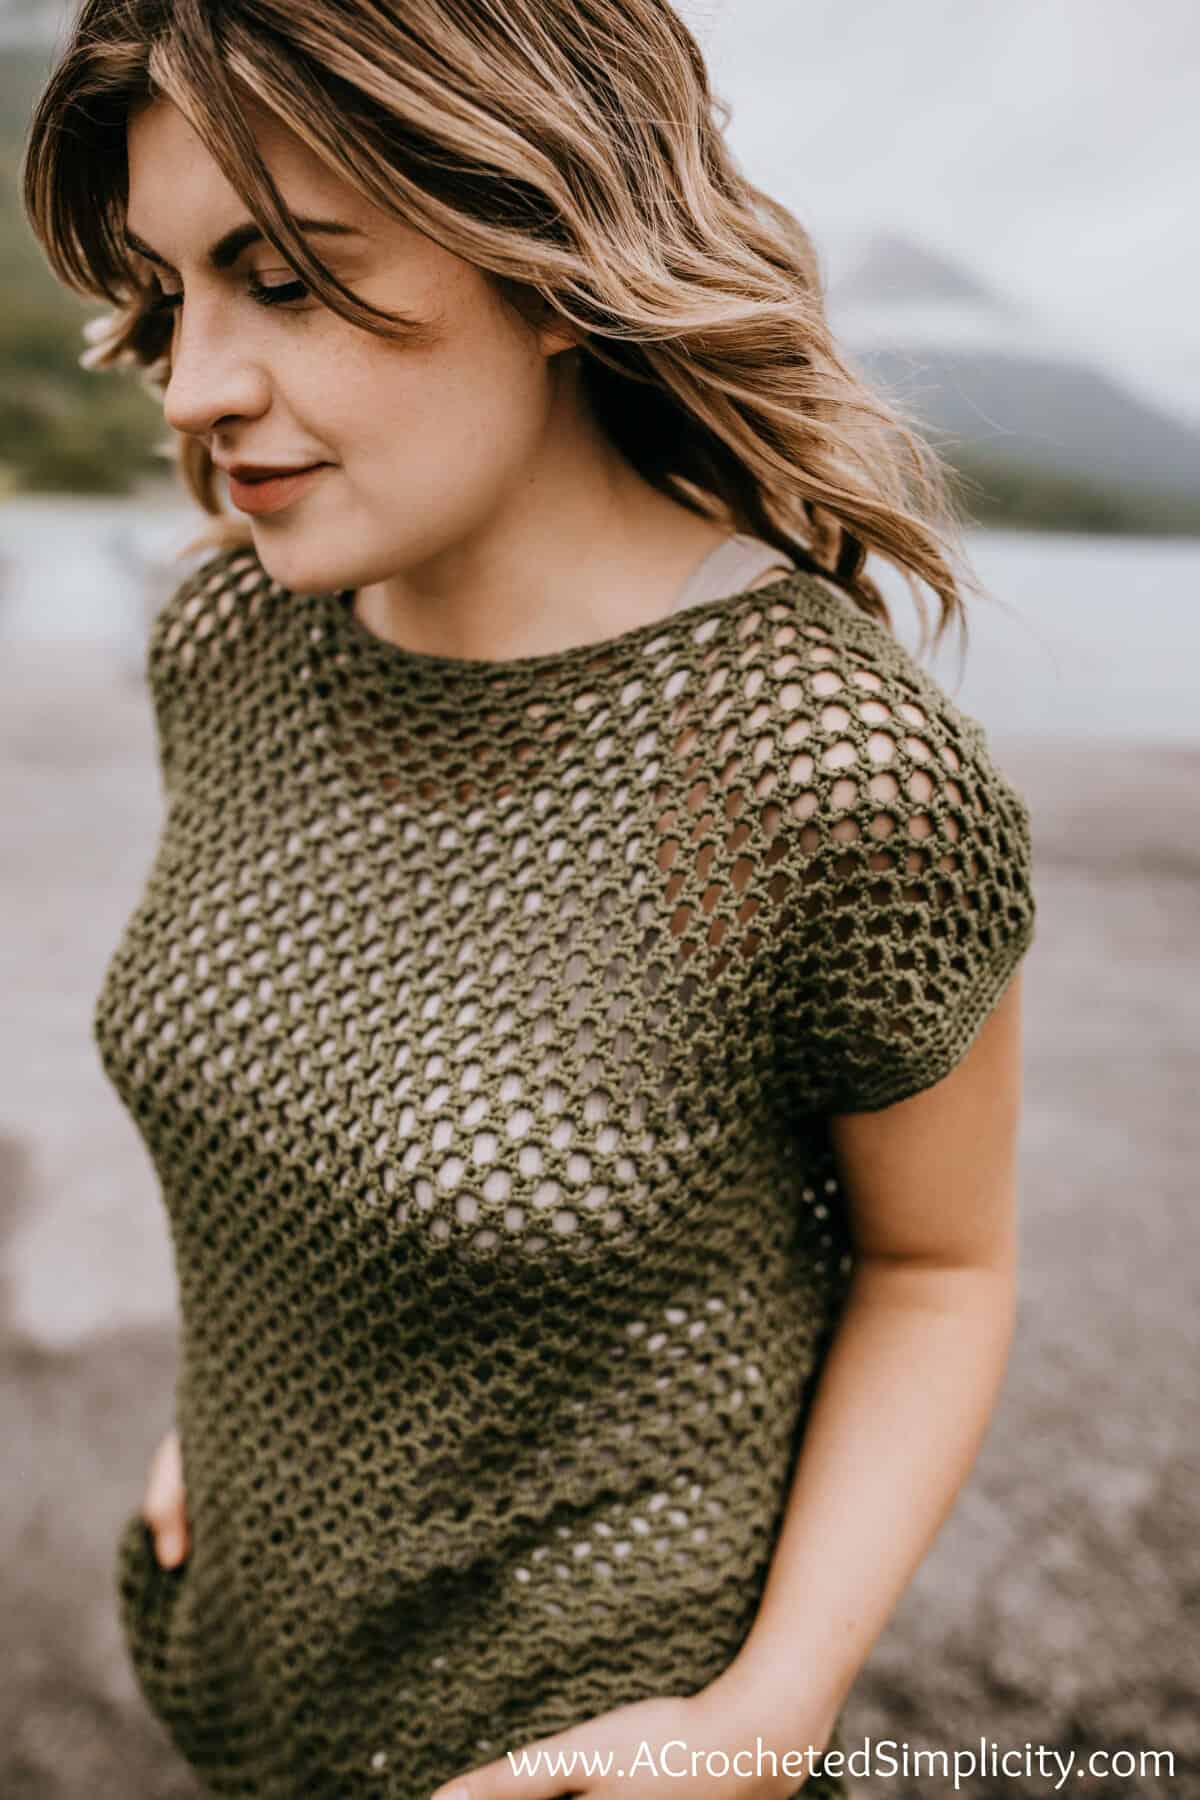 Model walking on the beach wearing a crochet mesh top pattern.